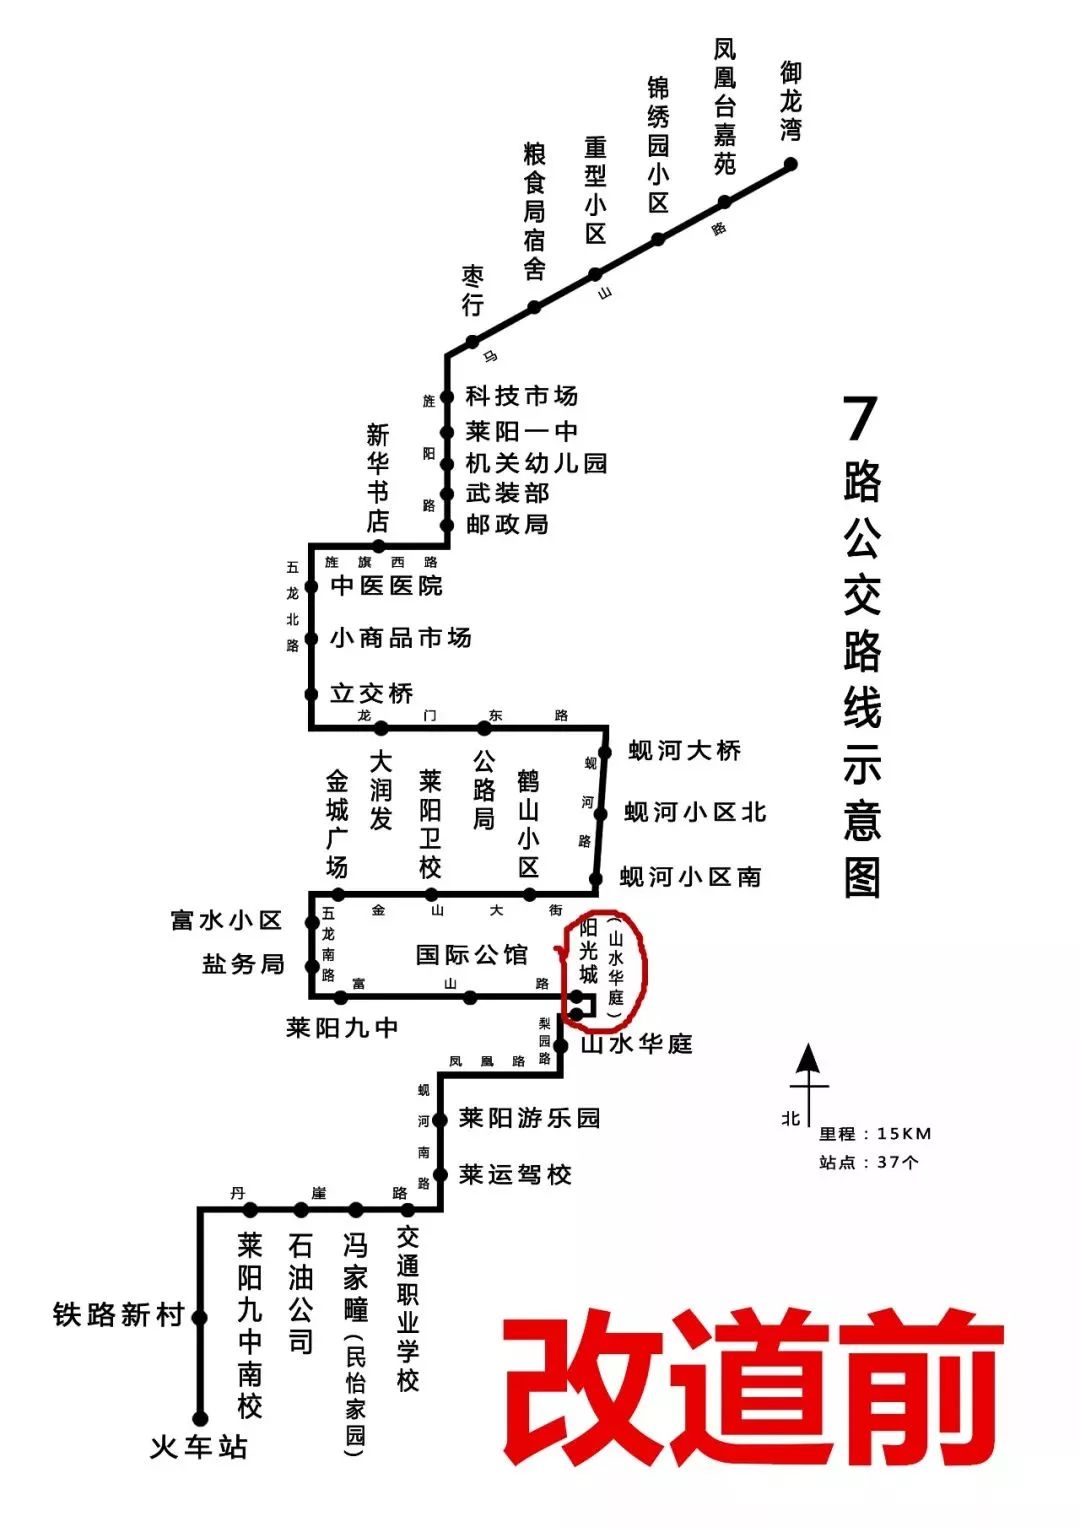 兰陵县7路公交线路图图片